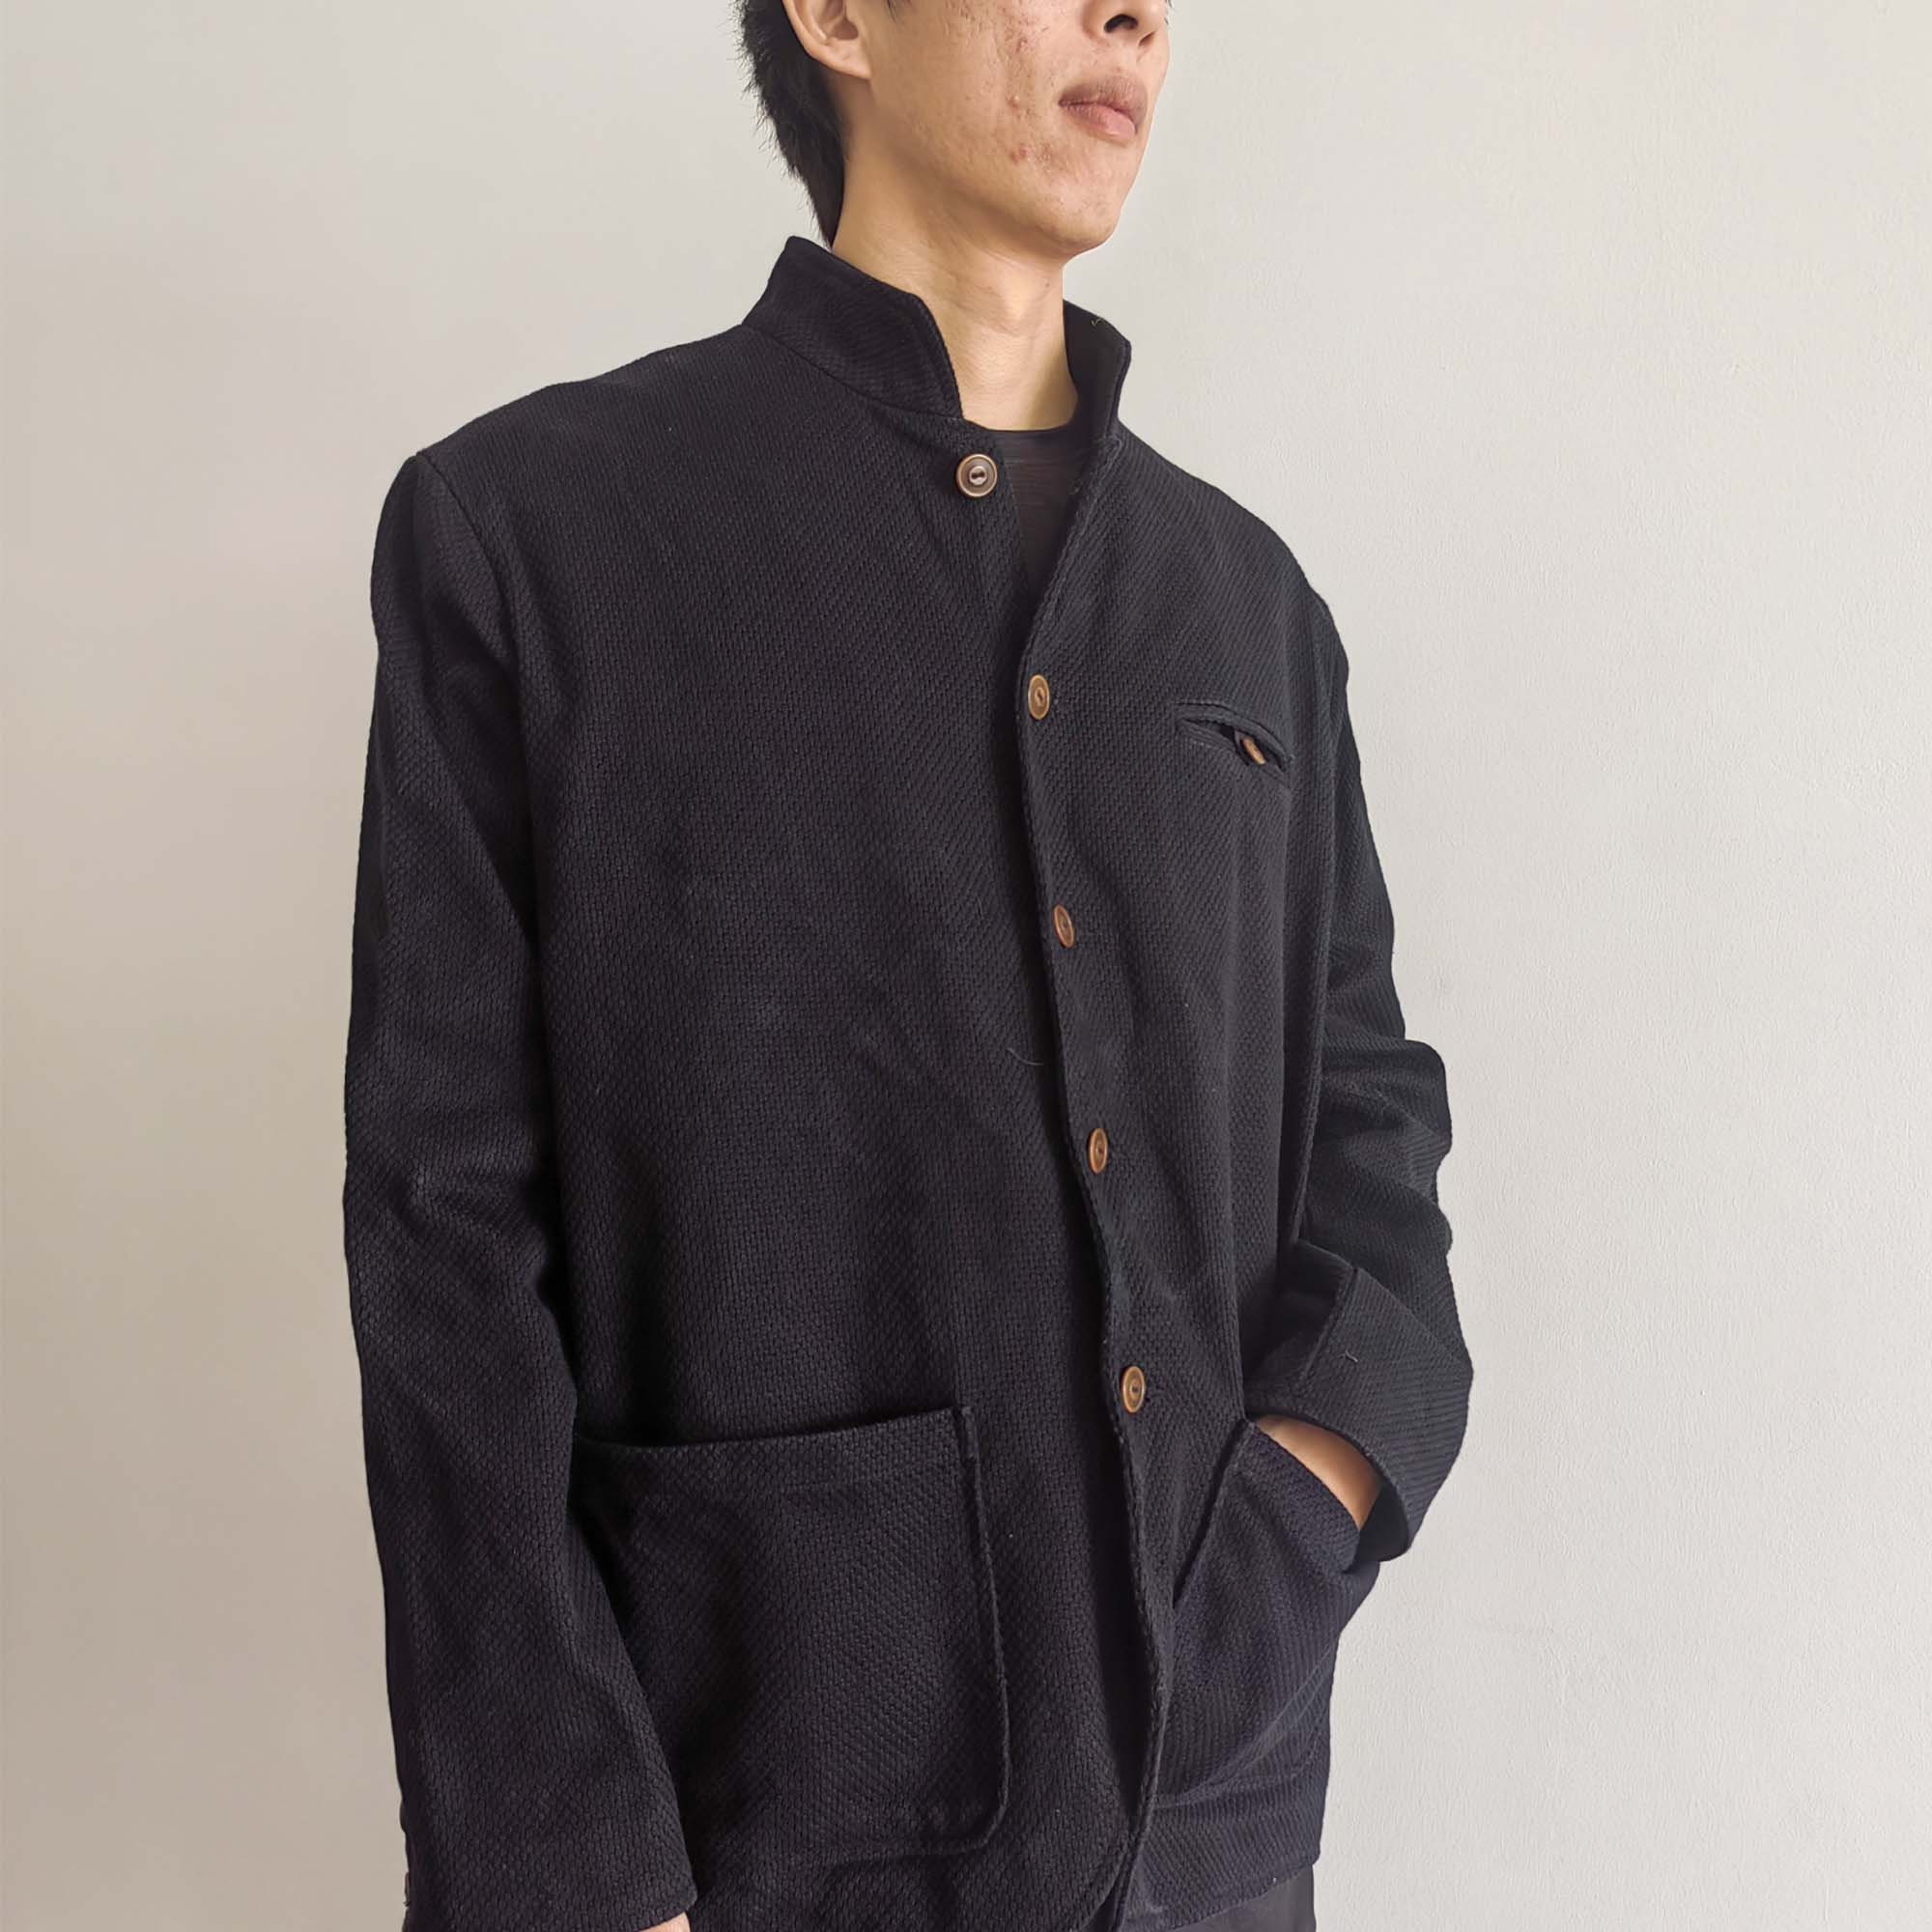 Retro French Work Jacket Thick Japanese Sashiko Fabric Unisex - Etsy UK